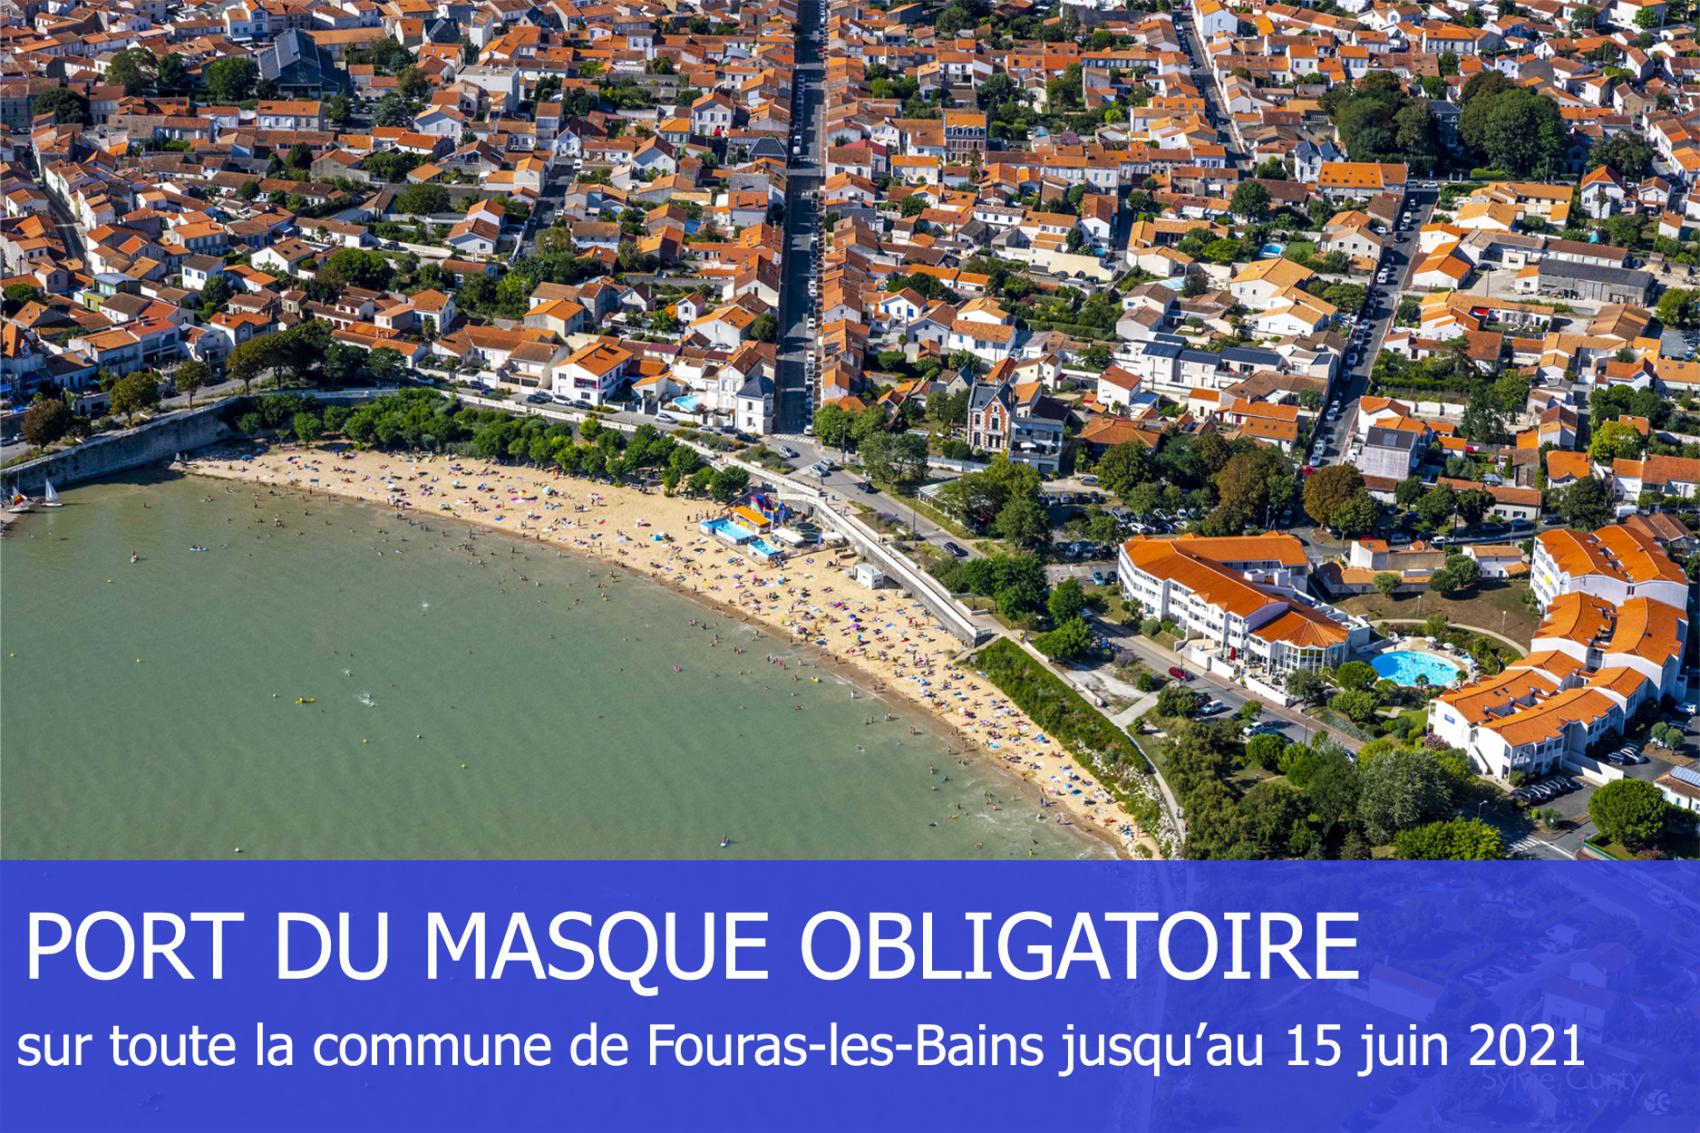 Port du masque obligatoire dans la commune de Fouras-les-Bains jusqu'au mardi 15 juin inclus